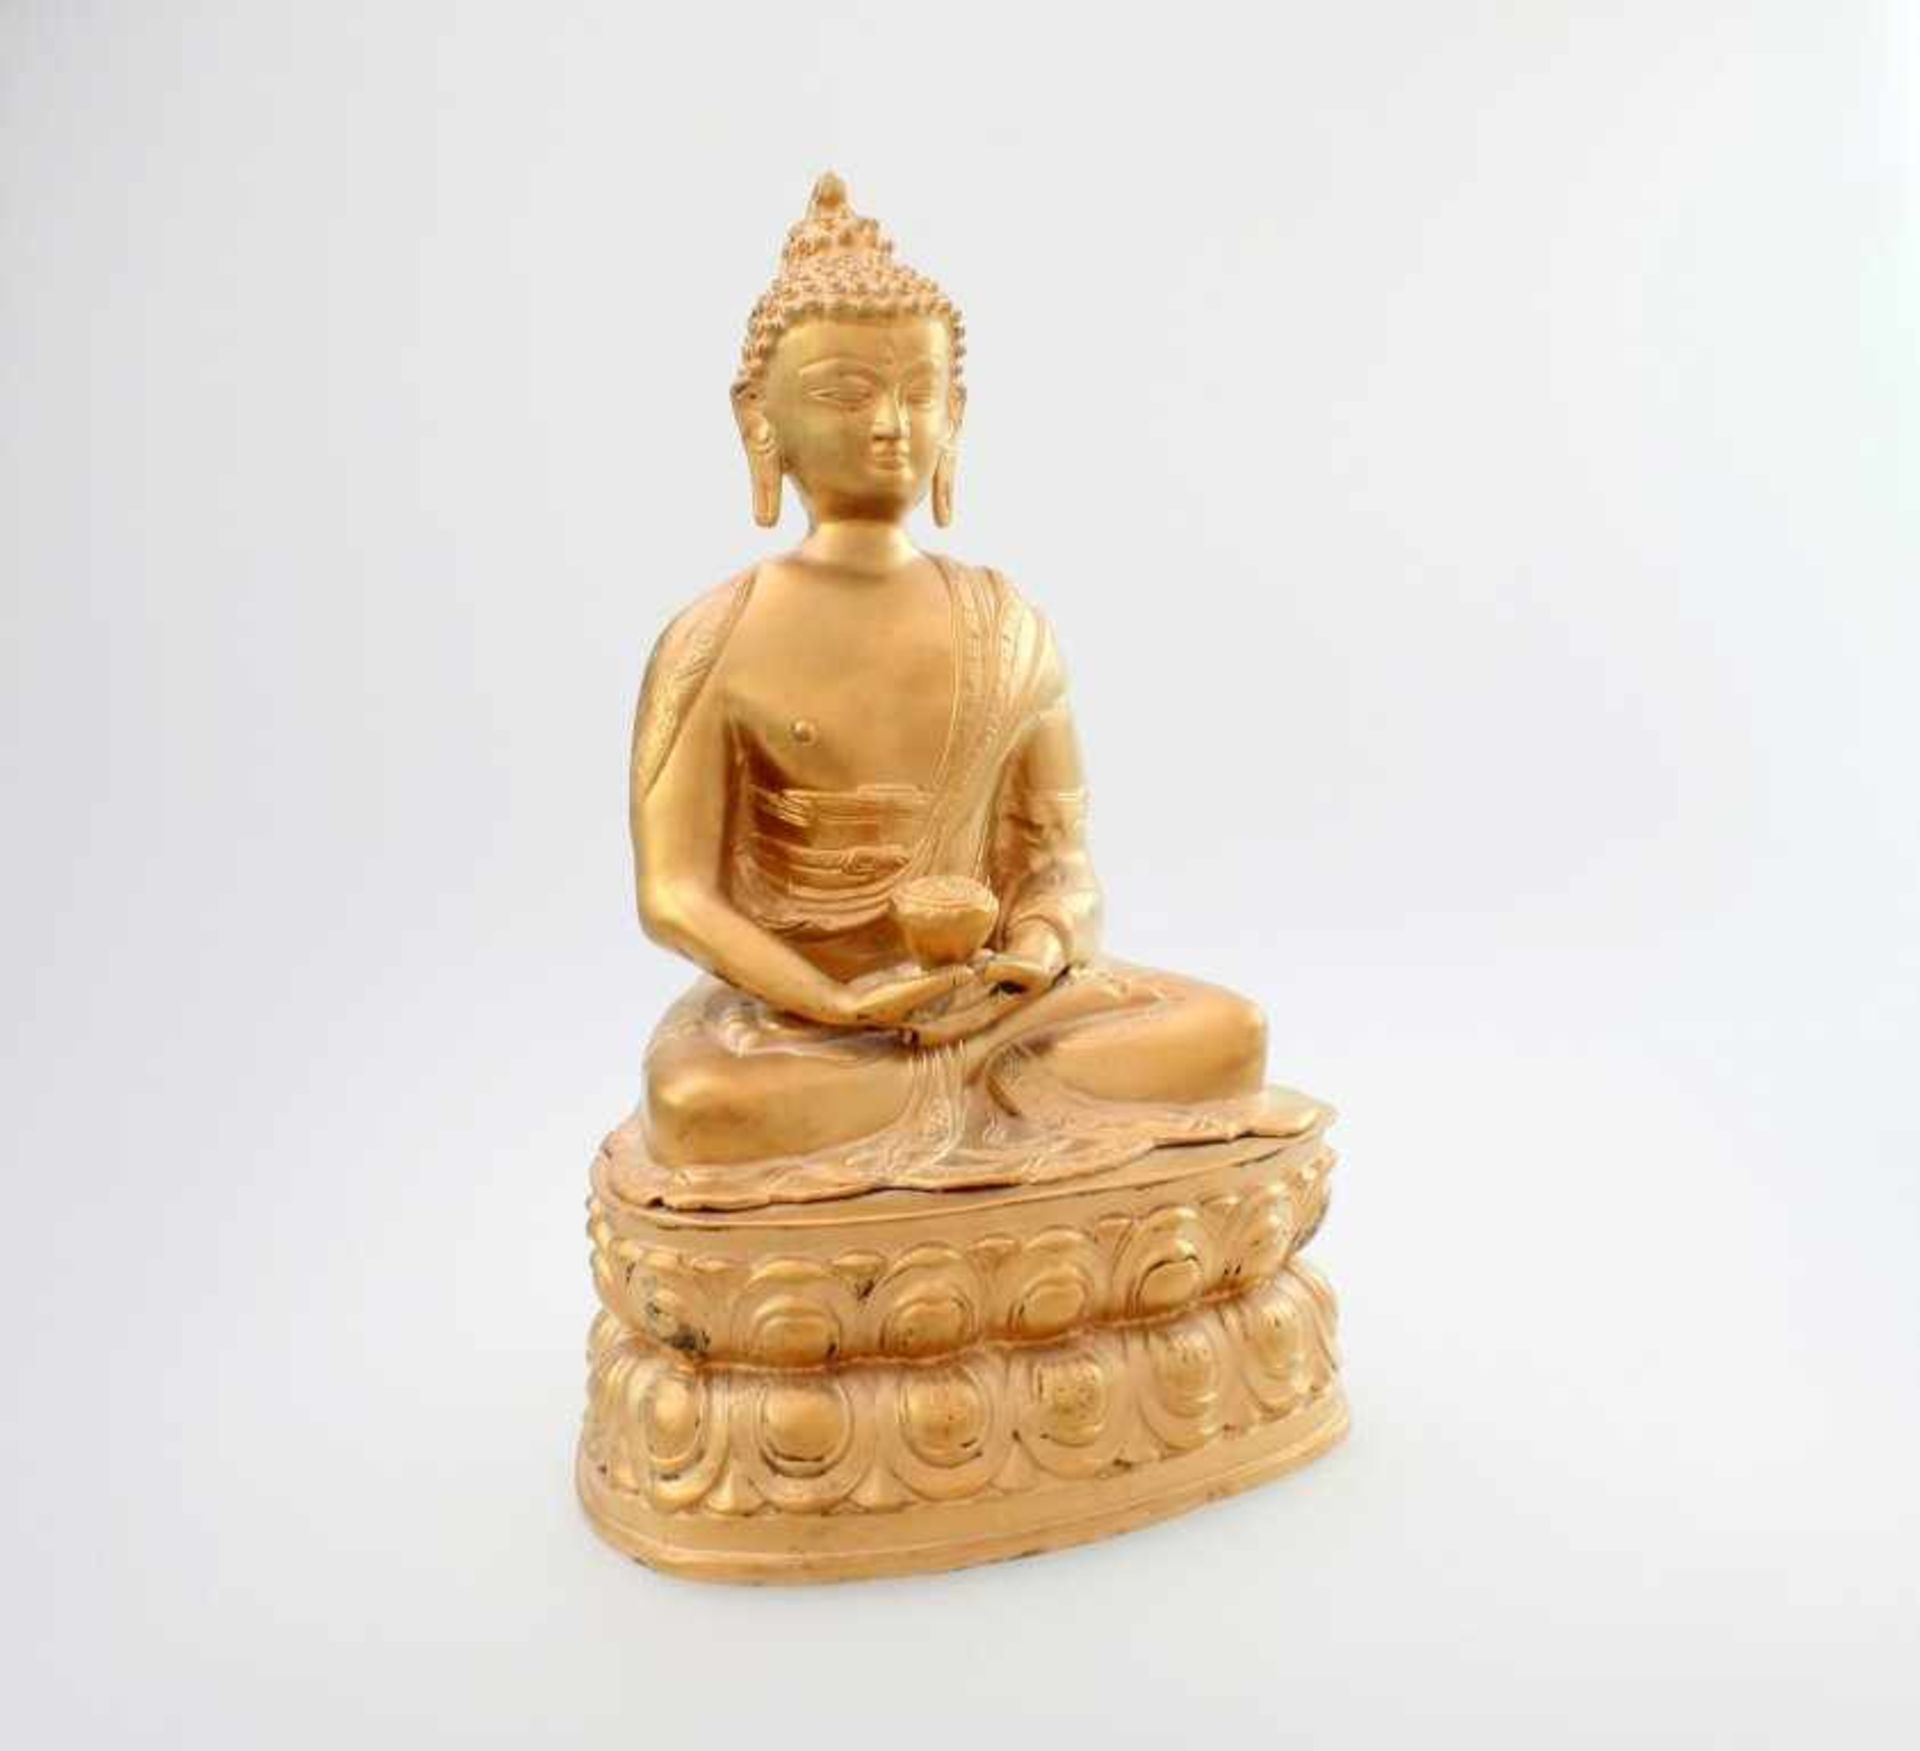 Buddha - Indien Meditierender Buddha, Teeschale in den Händen, auf ovalem Sockel mit umlaufendem